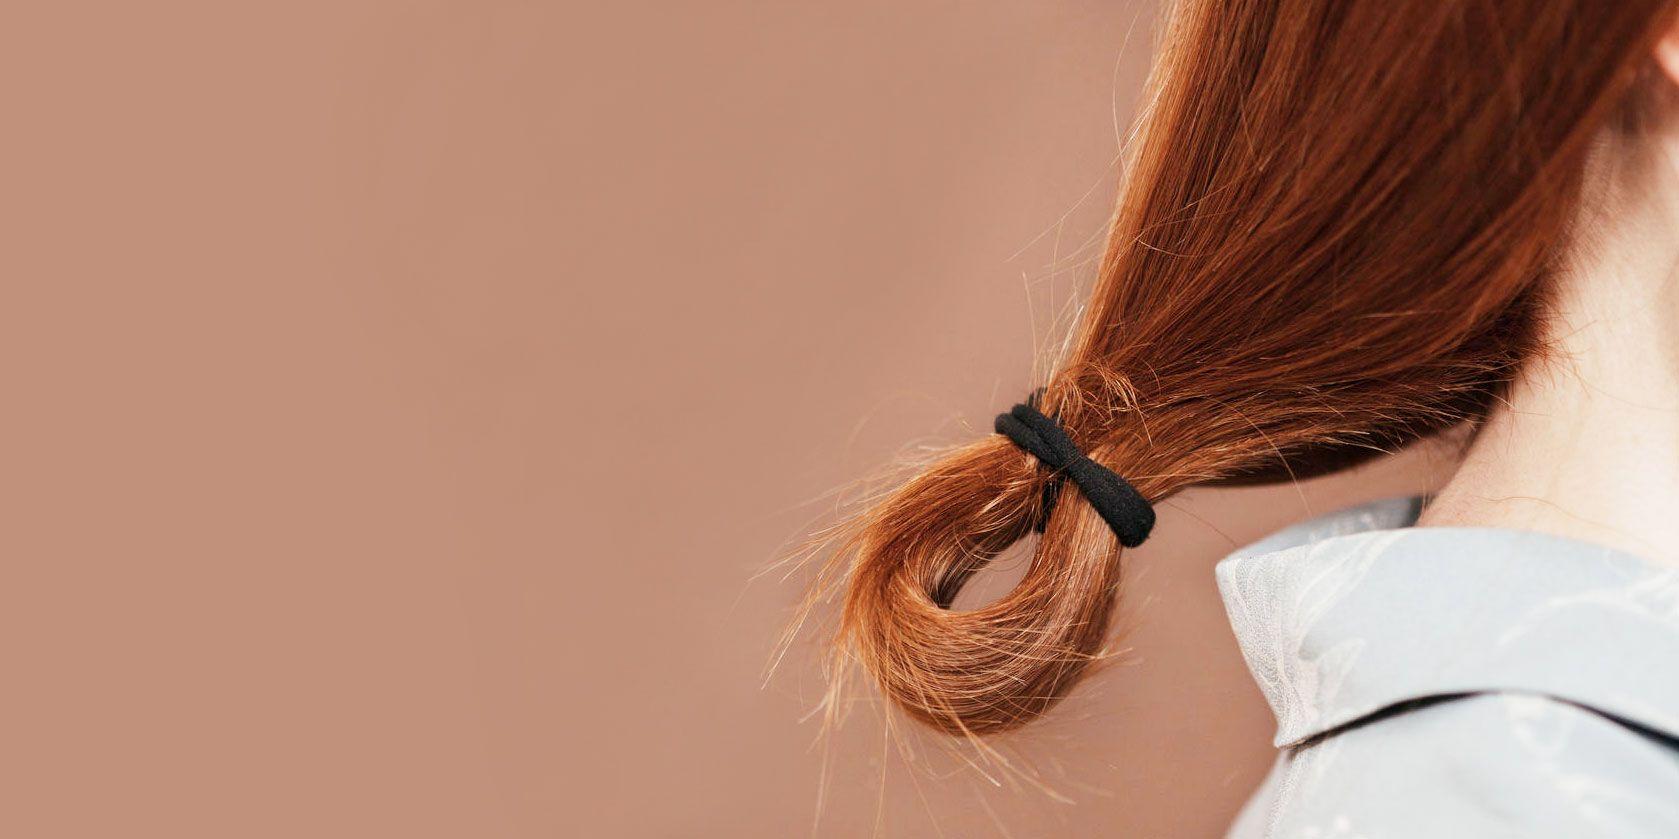 Dấu hiện nhận biết tóc hư tổn rất dễ và đơn giản chỉ cần bạn chú ý một chút thôi (Nguồn: Internet).